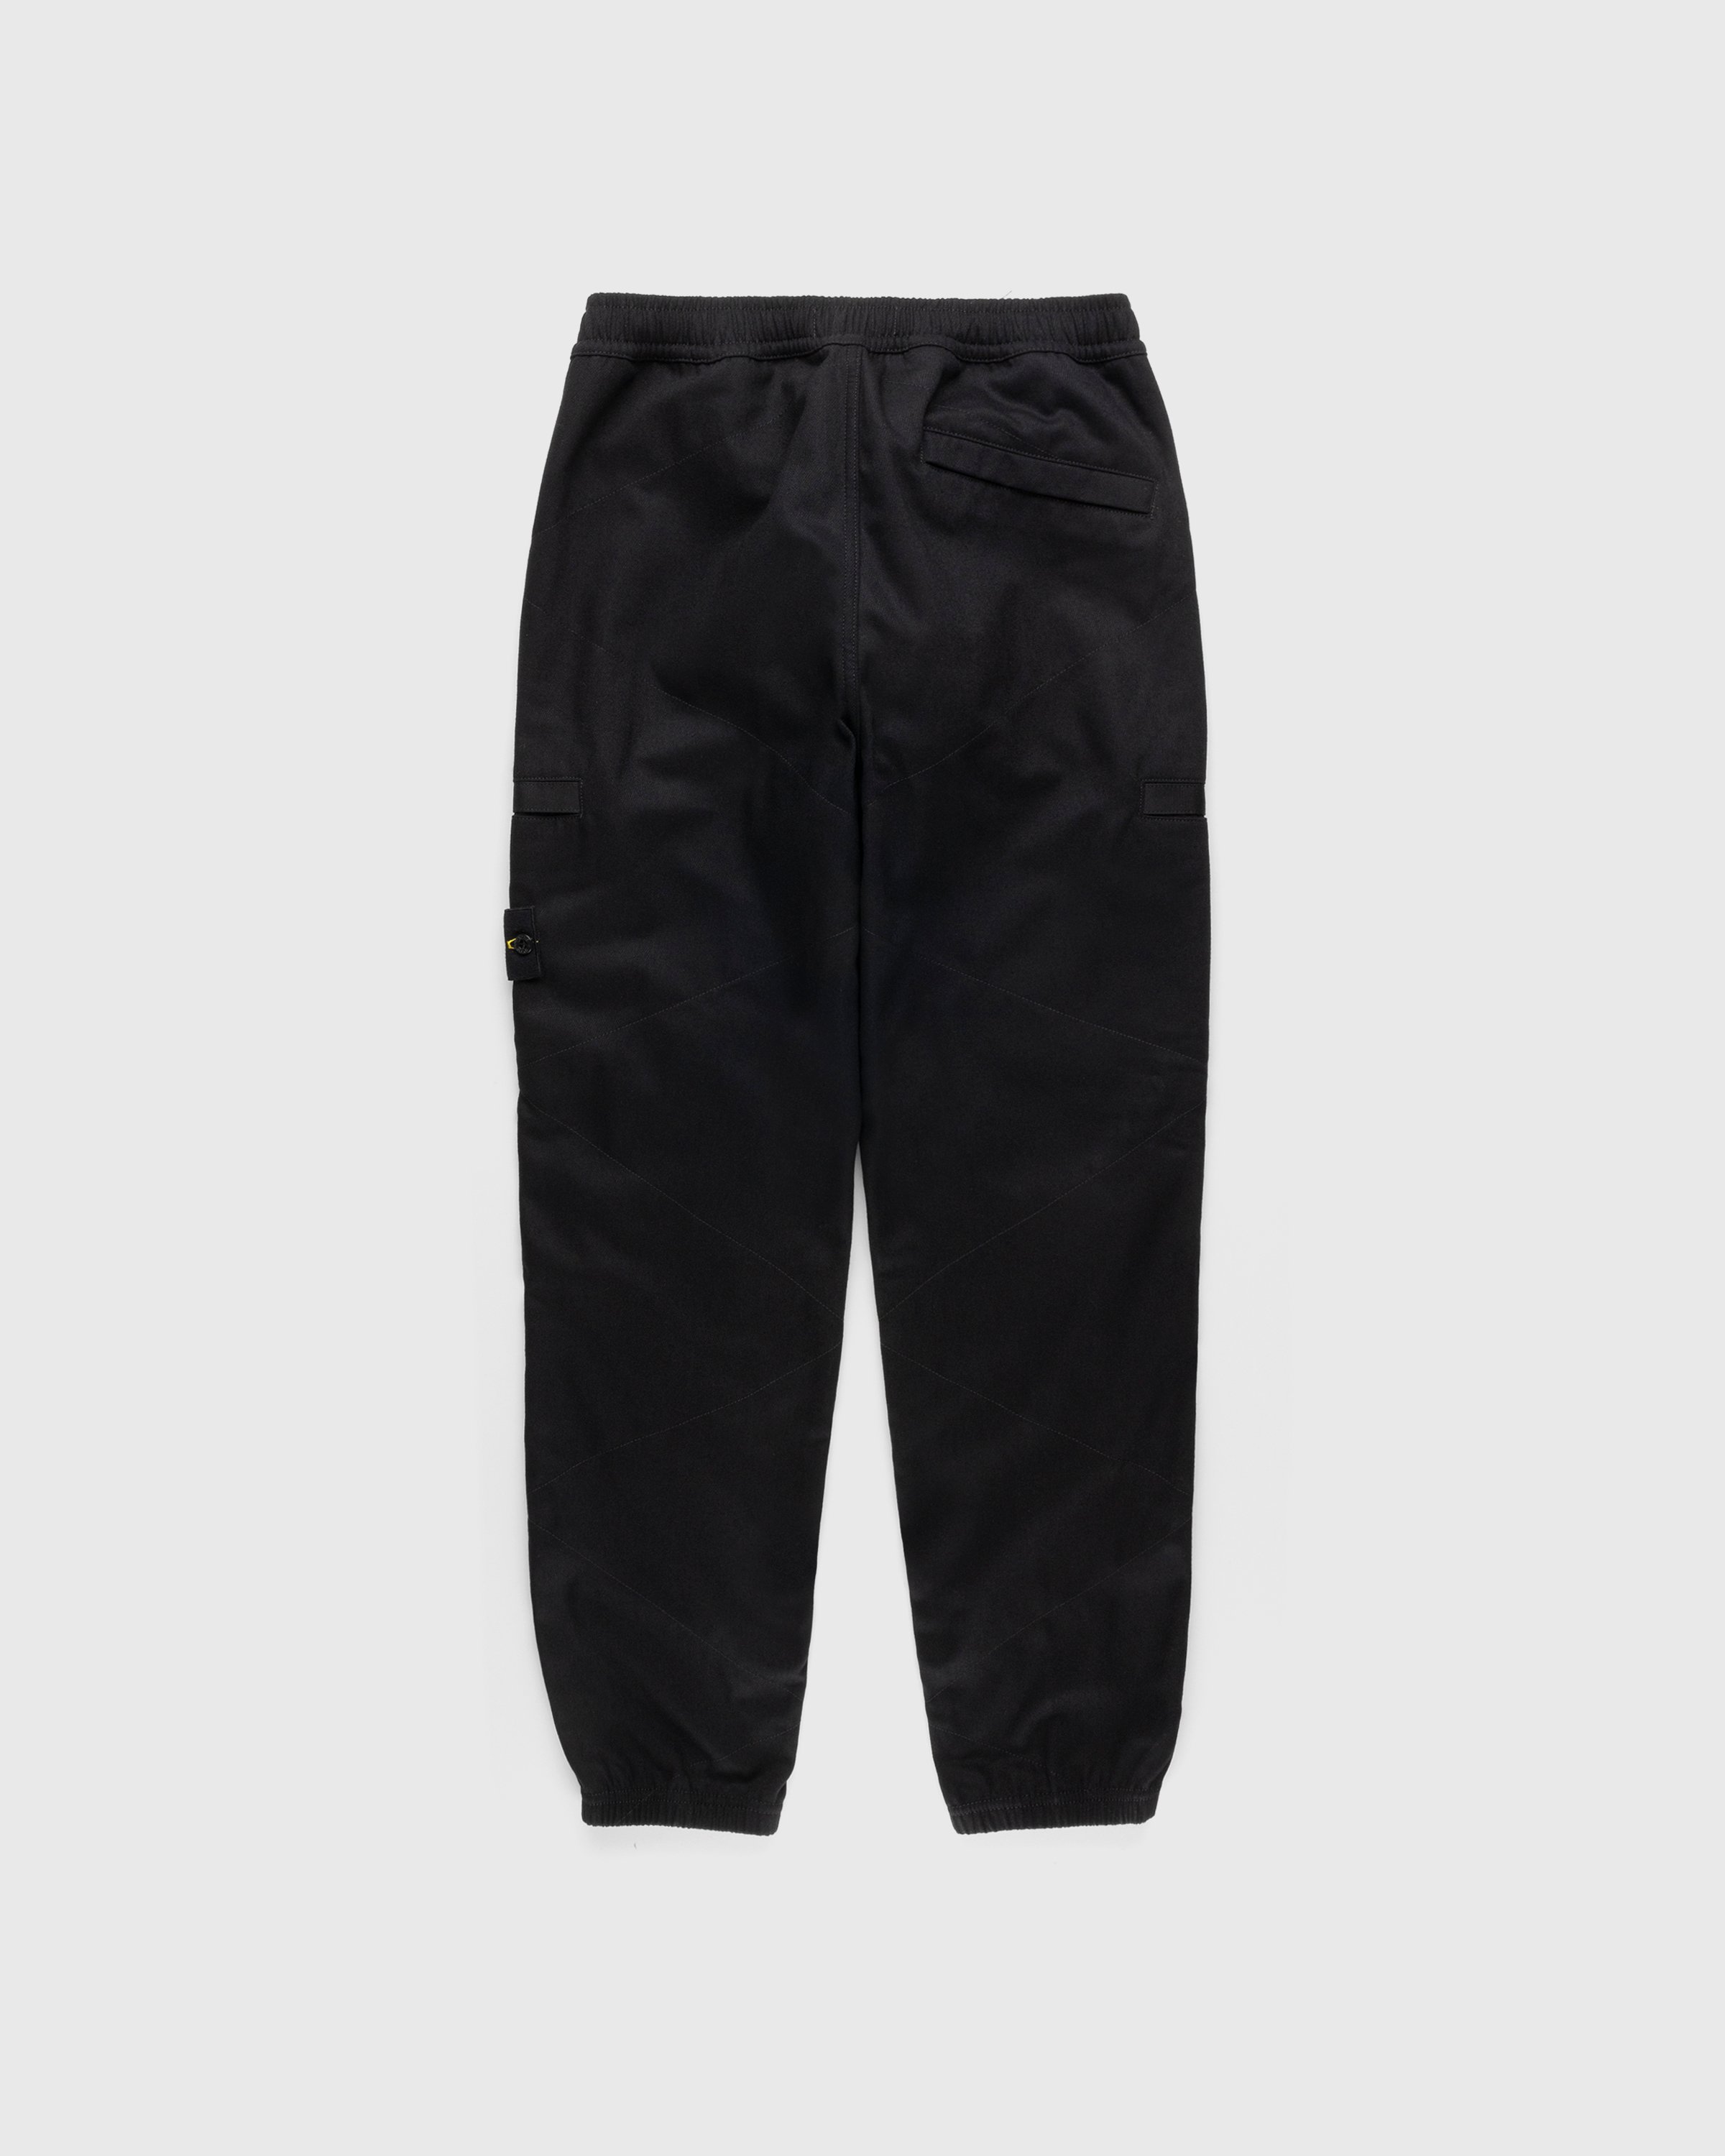 Stone Island - Wool-Nylon Cargo Pants Black - Clothing - Black - Image 2